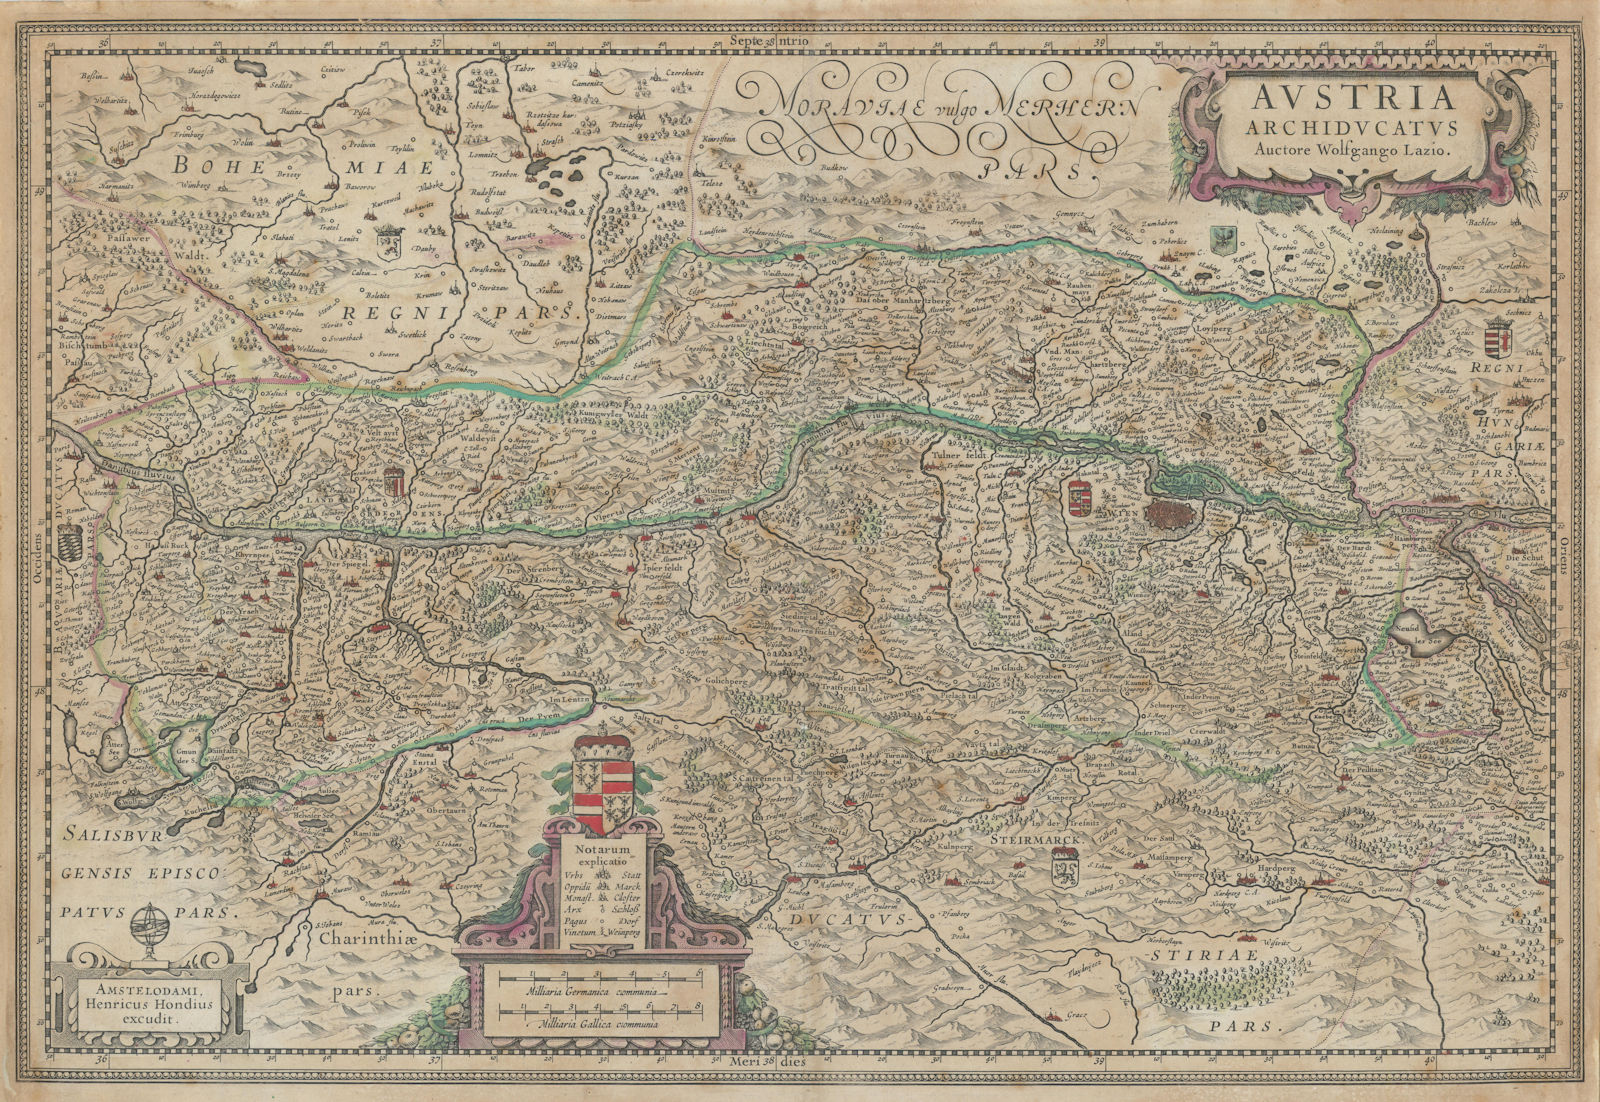 Austria Archiducatus auctore Wolfgango Lazio by Henricus Hondius c1636 old map